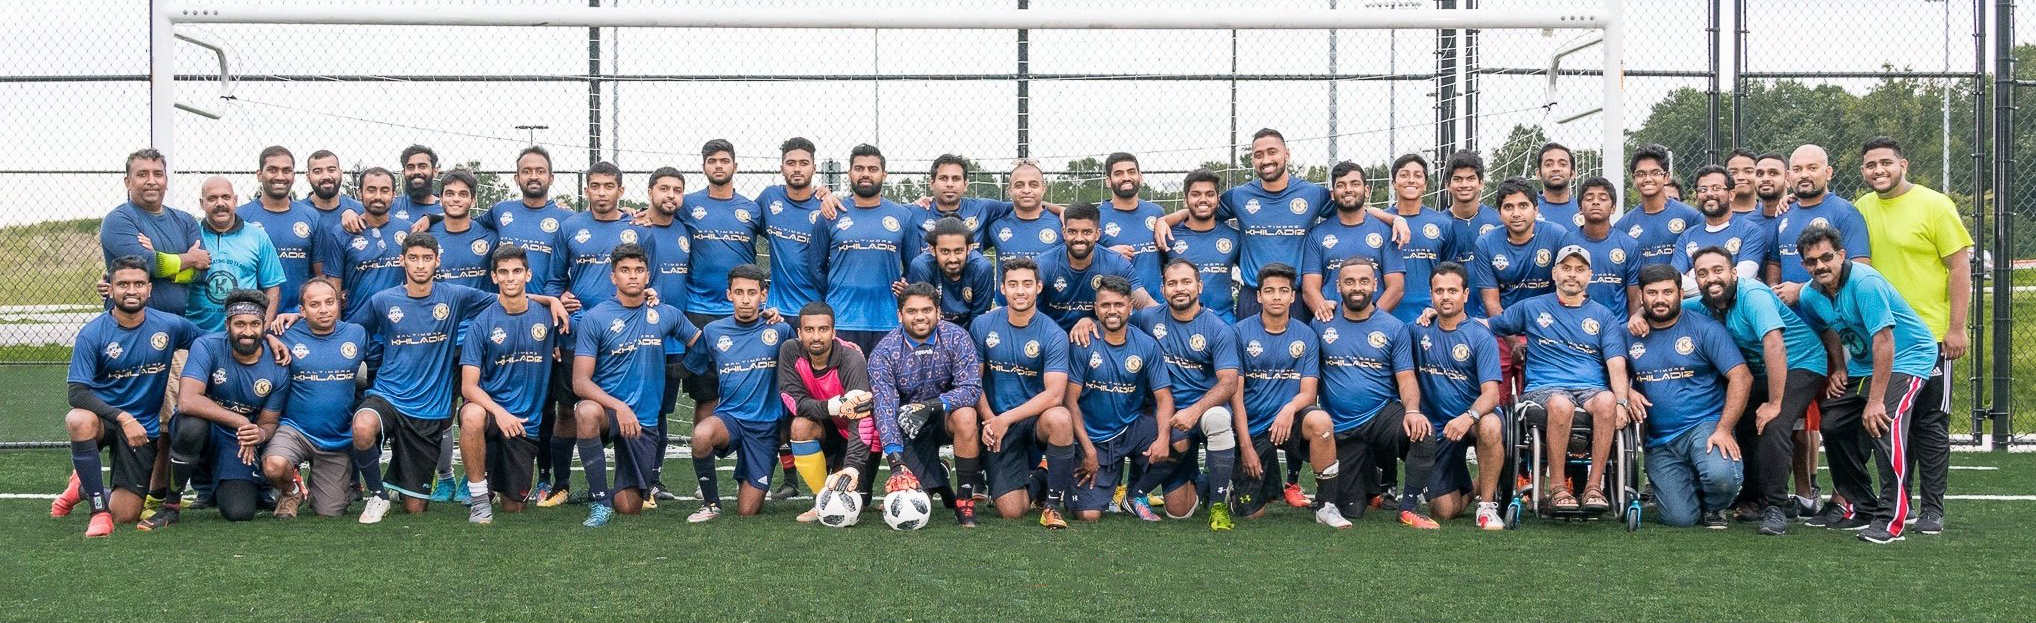 Khiladiz Soccer Team